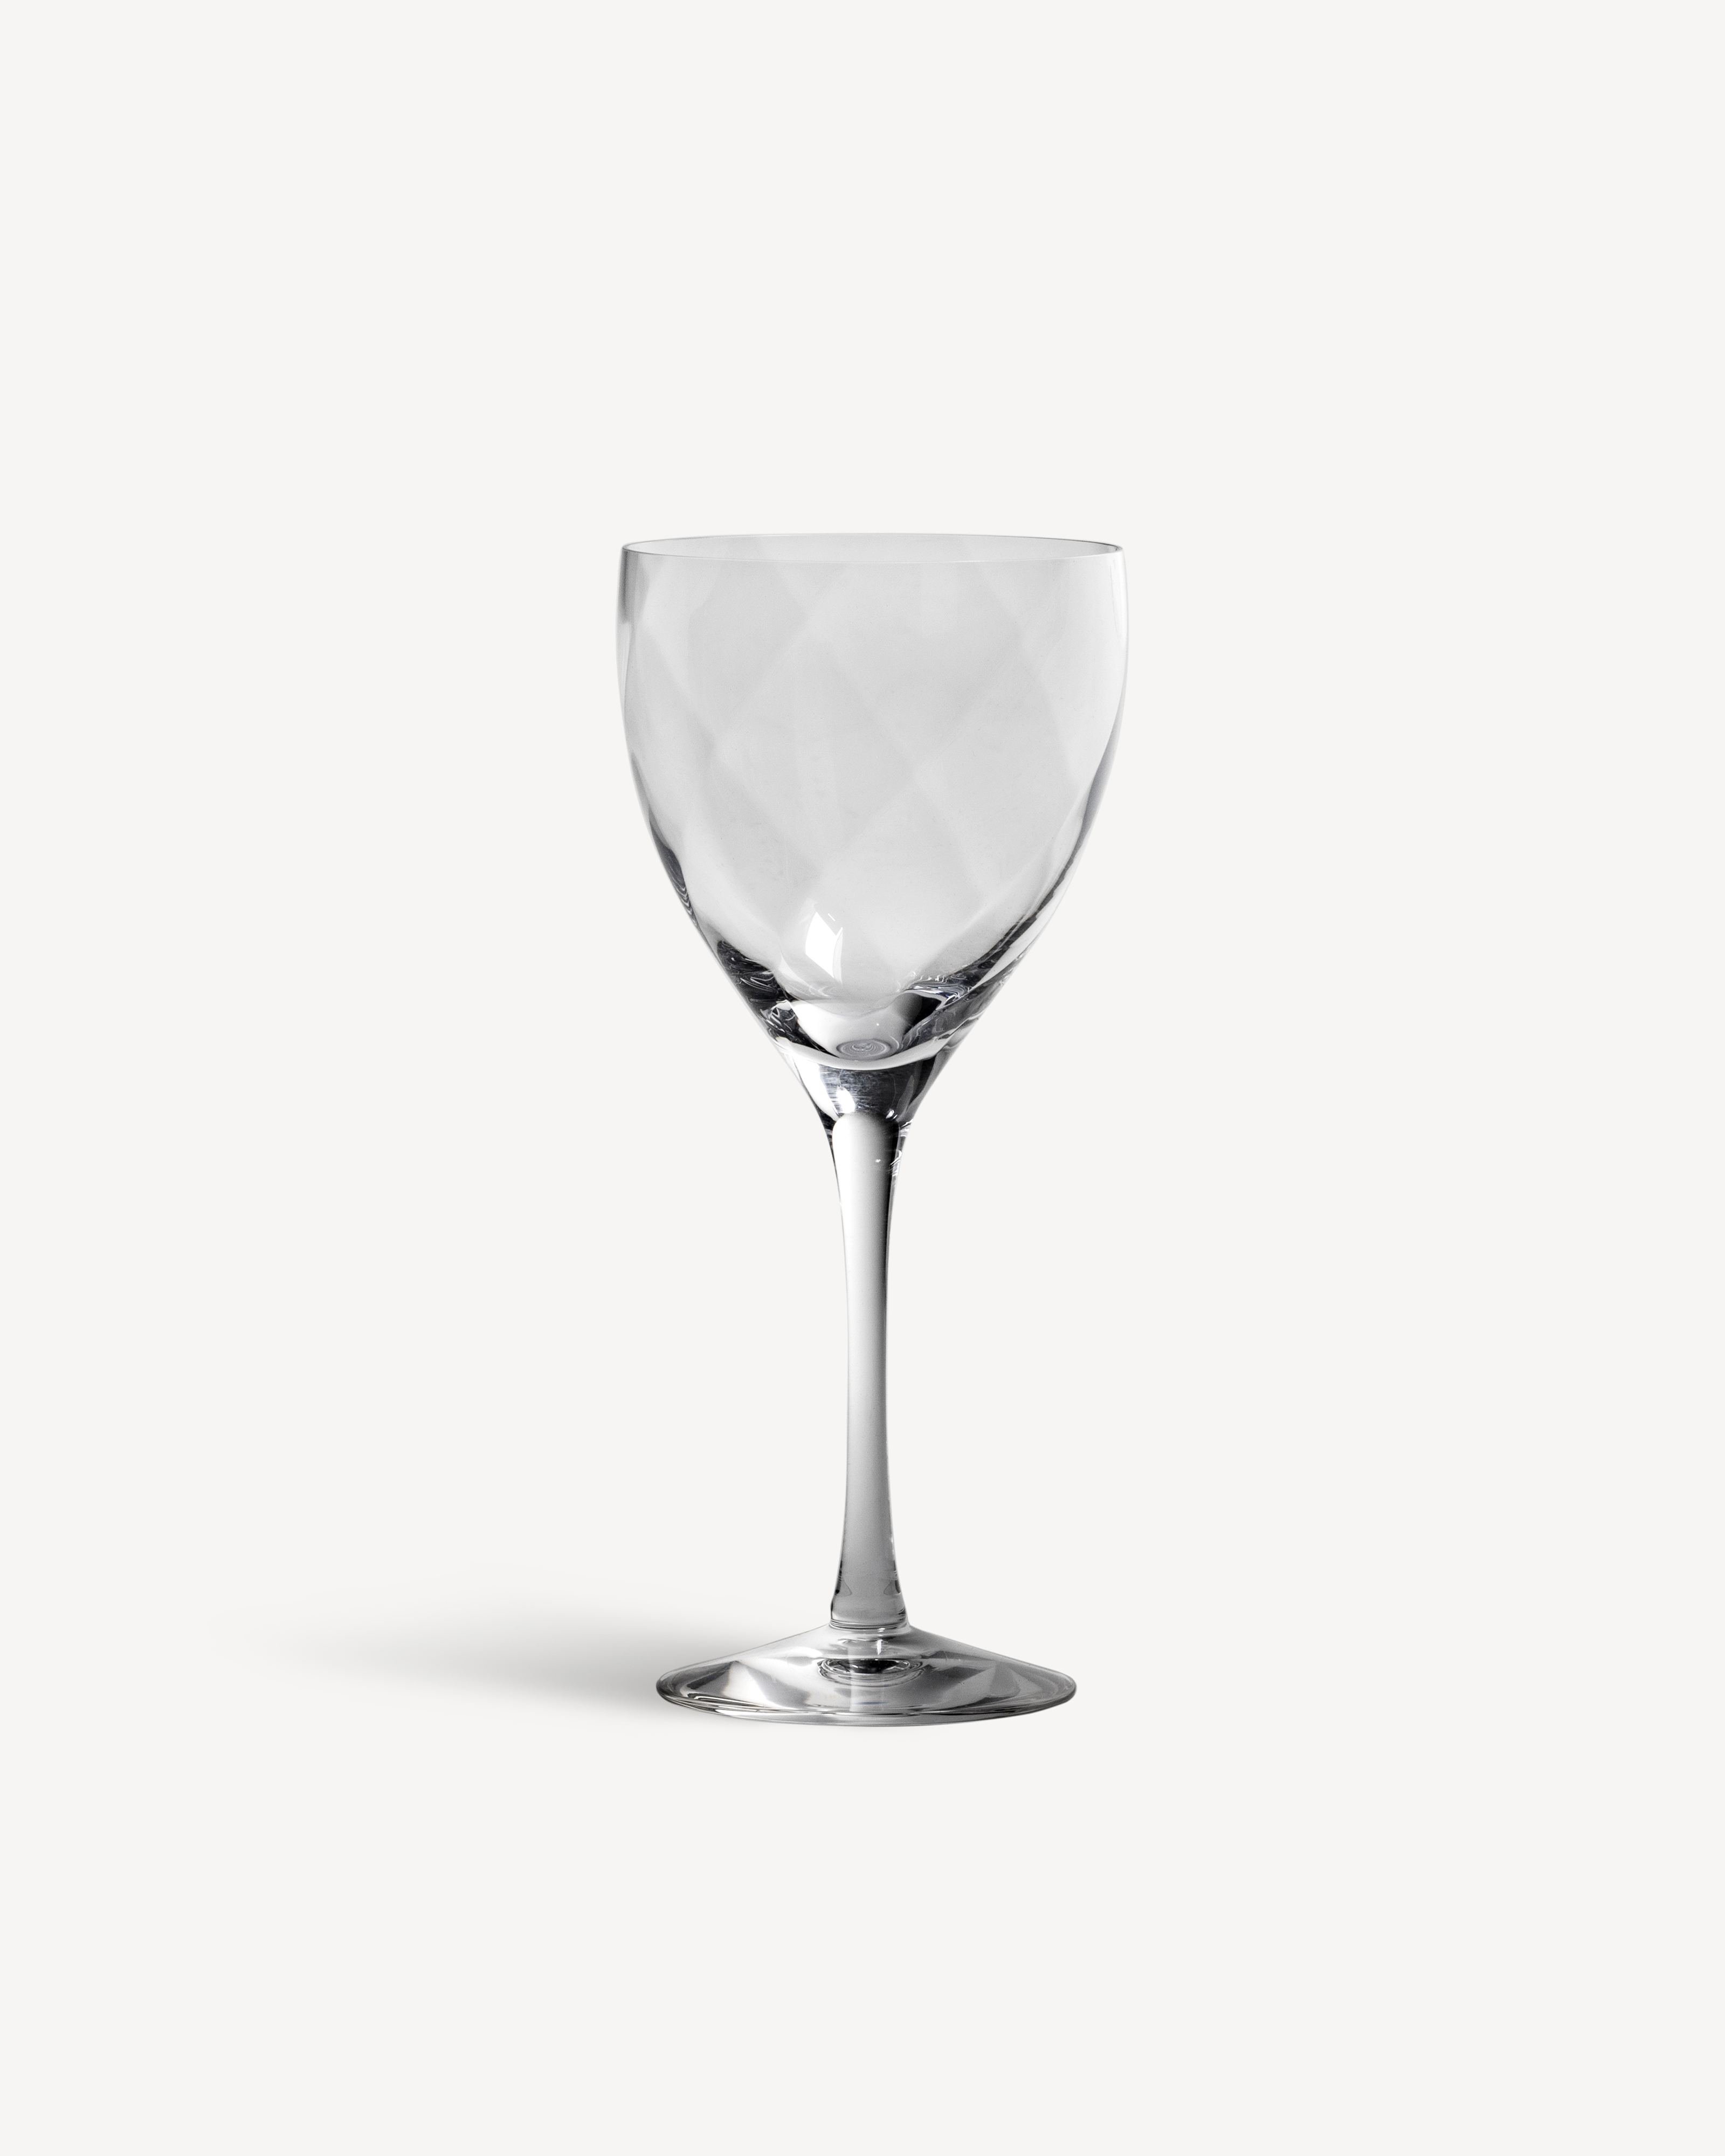 Château glass | Kosta Boda